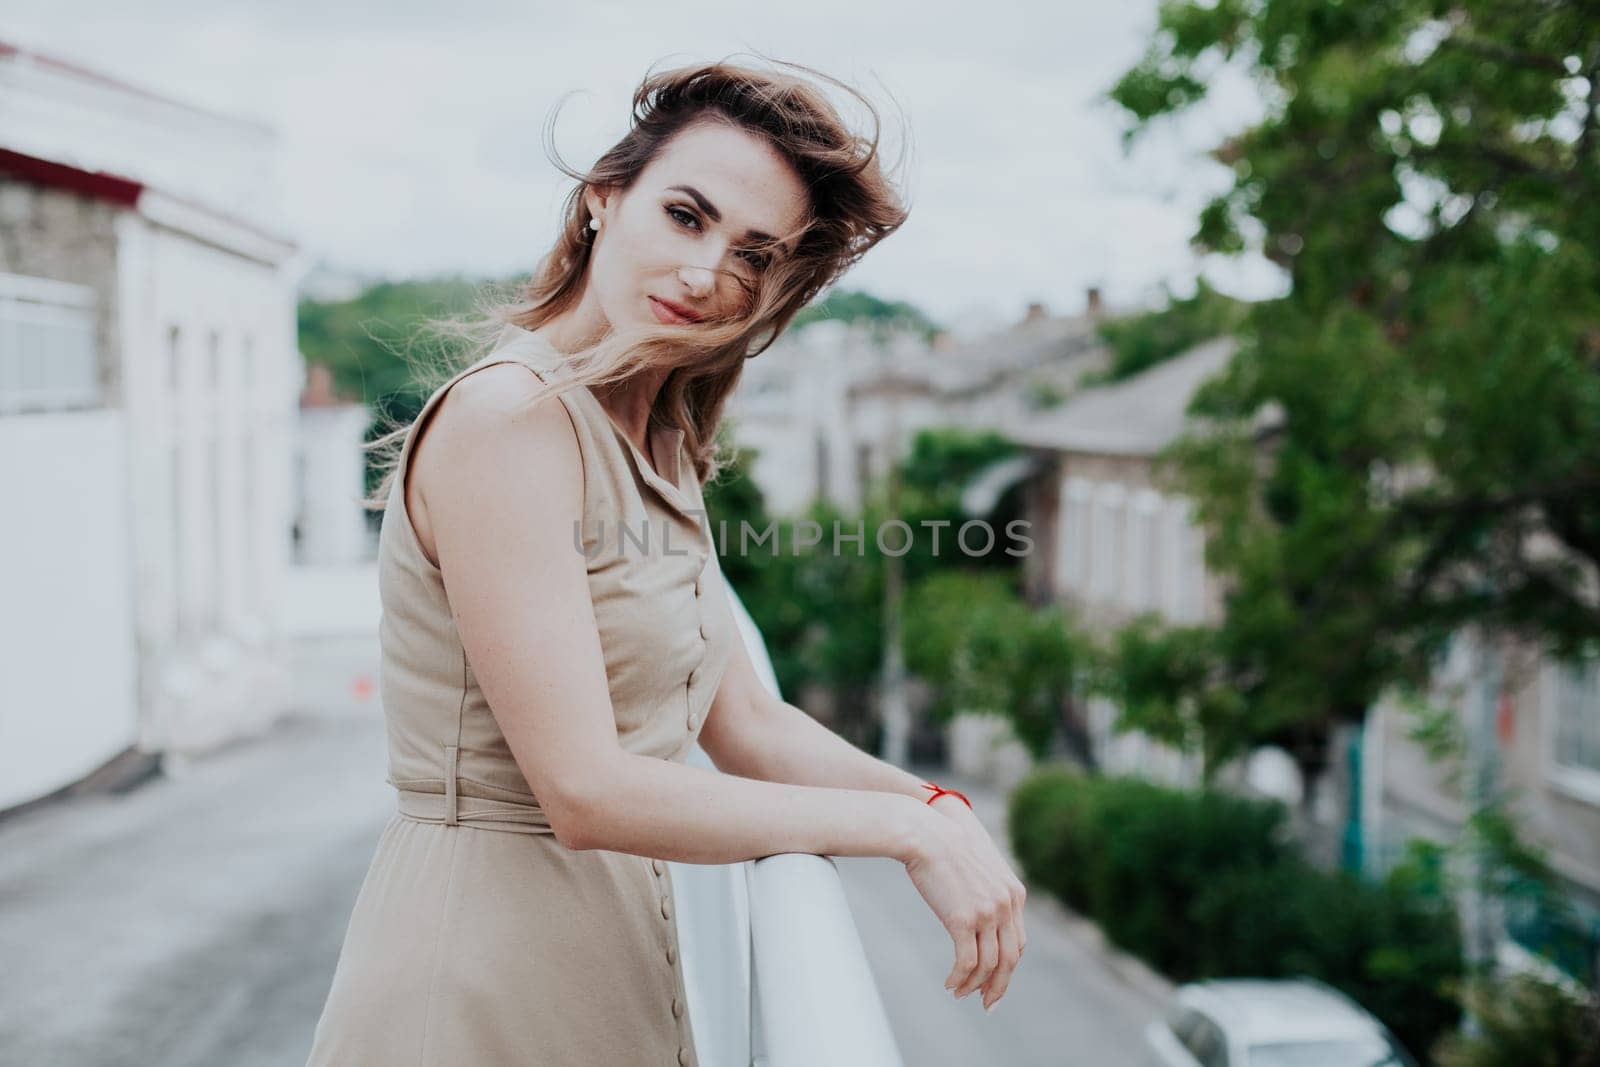 Portrait of a beautiful fashionable woman in a beige dress